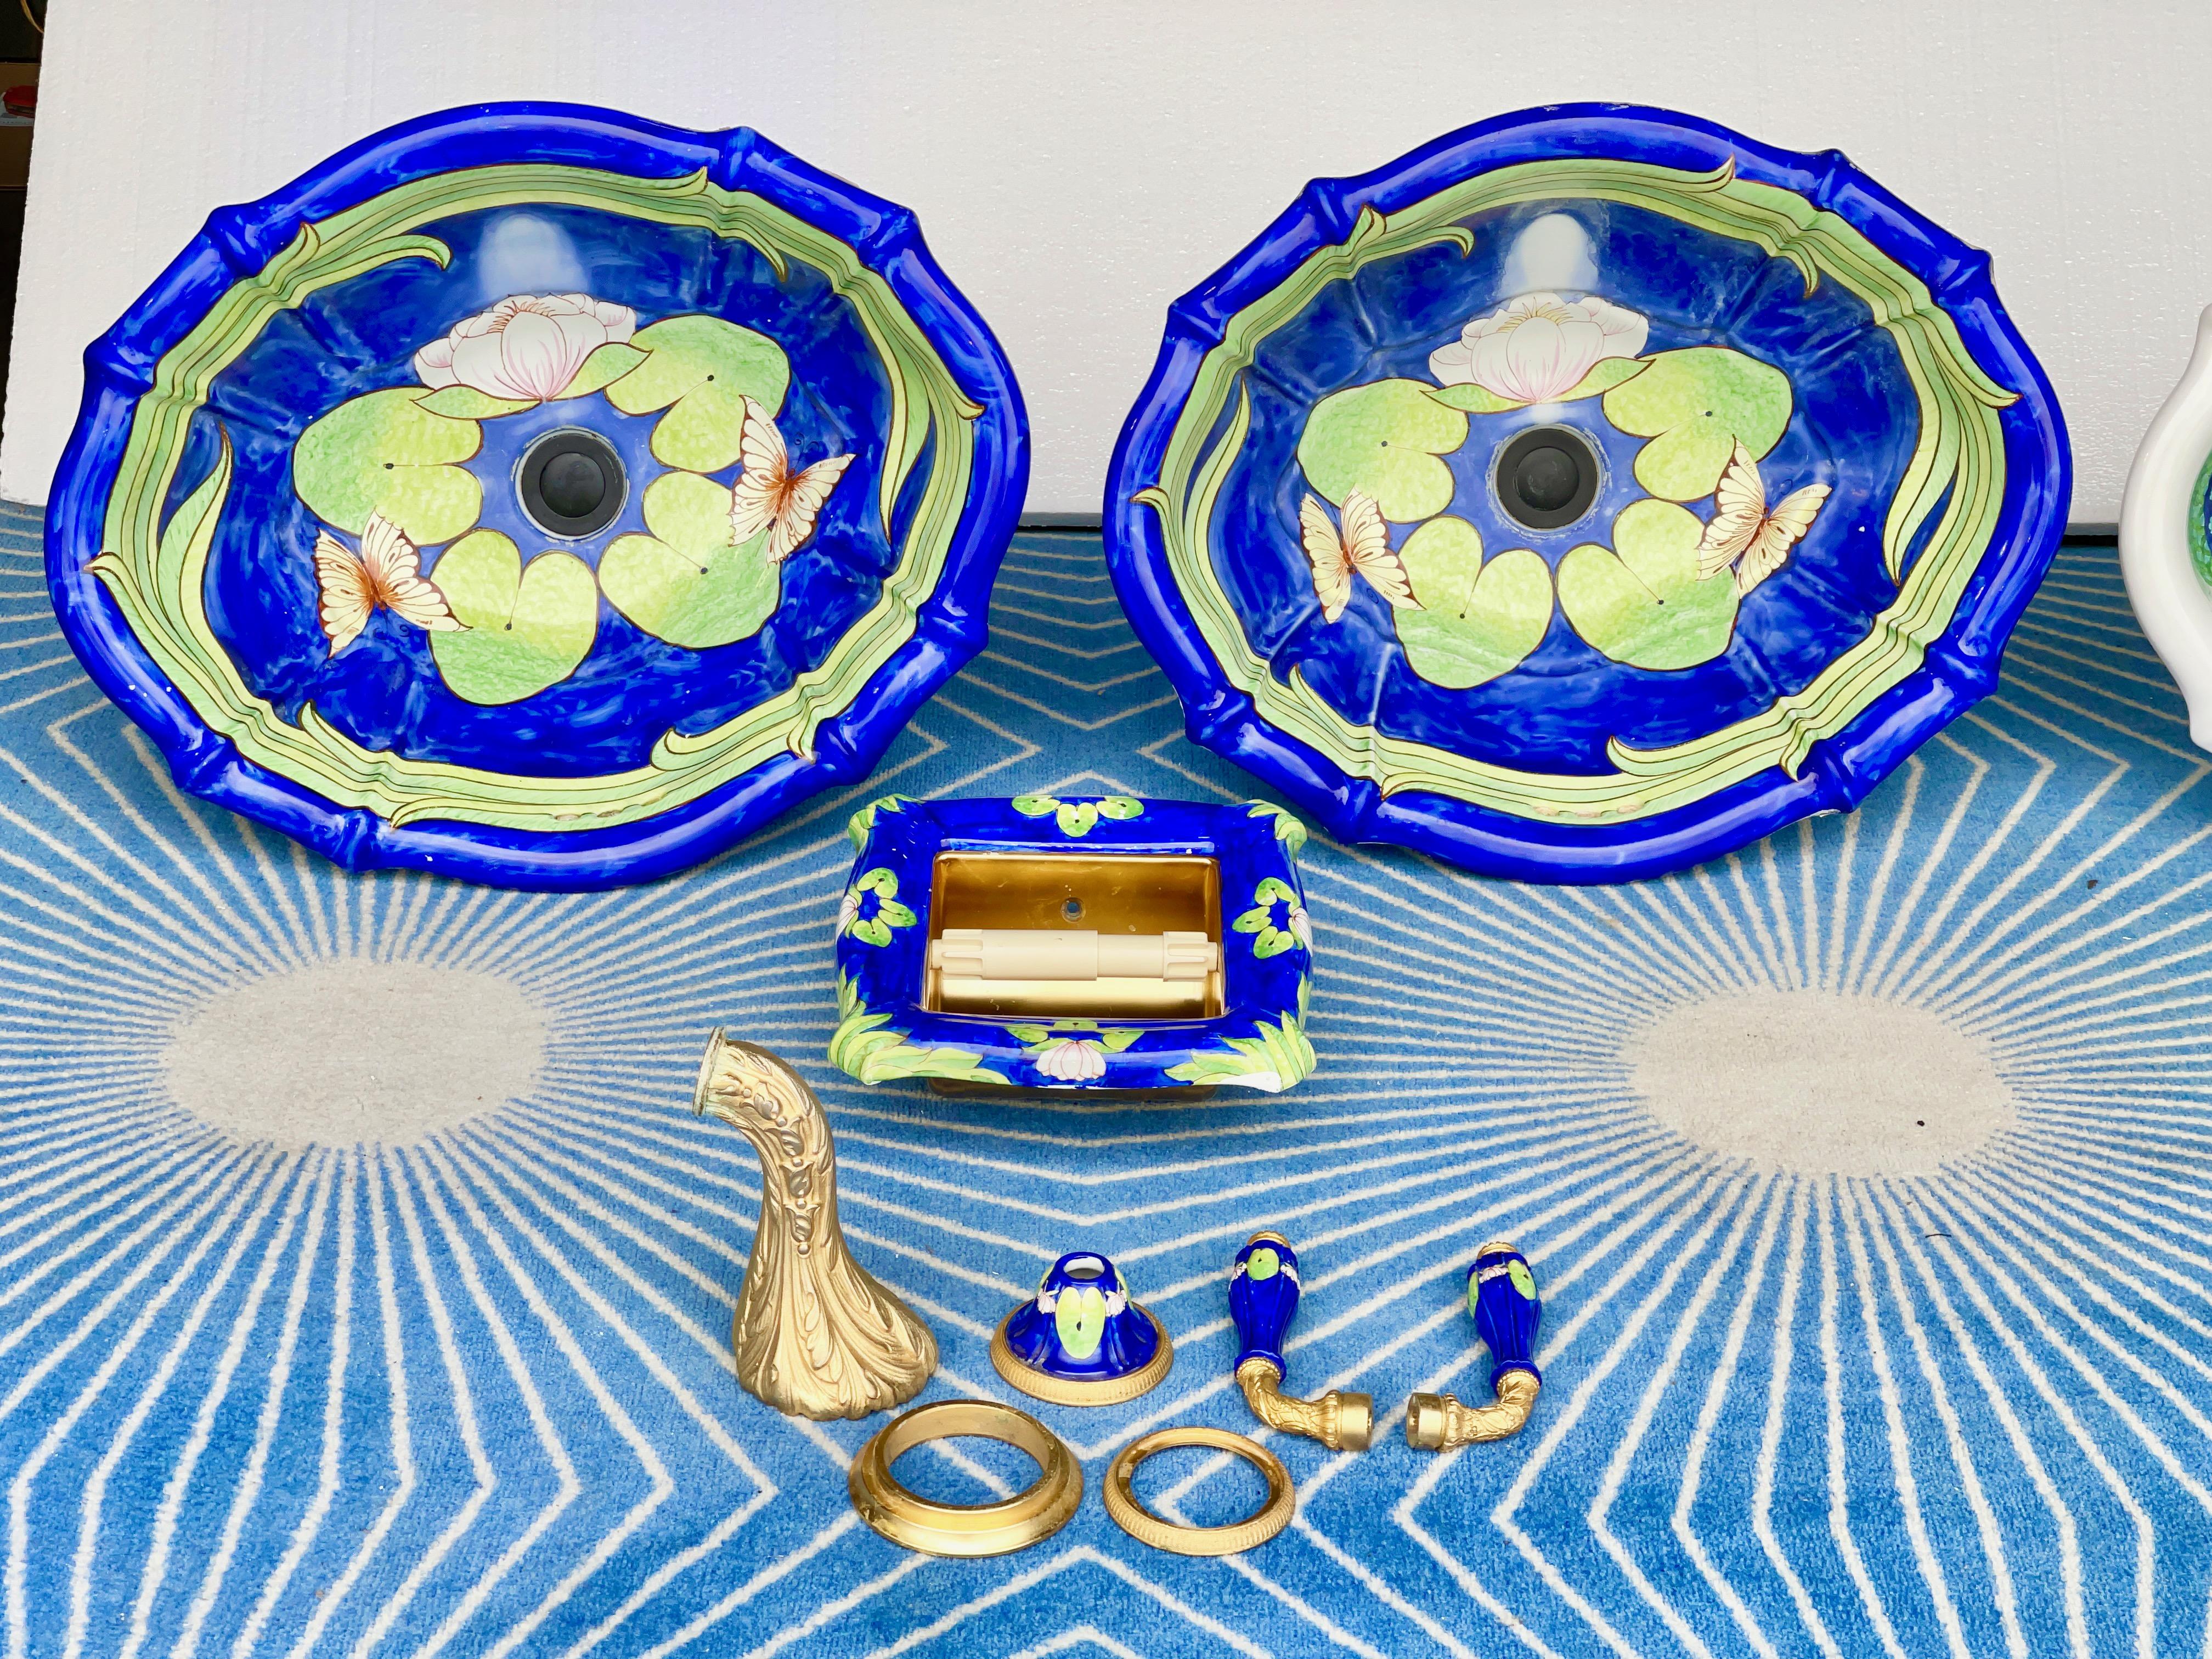 Paire d'éviers assortis en porcelaine italienne peinte à la main par Sherle Wagner, avec un motif de fleurs de lotus, une forme ovale festonnée, un bord surélevé et un insert de comptoir.
Labellisé à la porcelaine : Sherle Wagner Italie.
Drainage